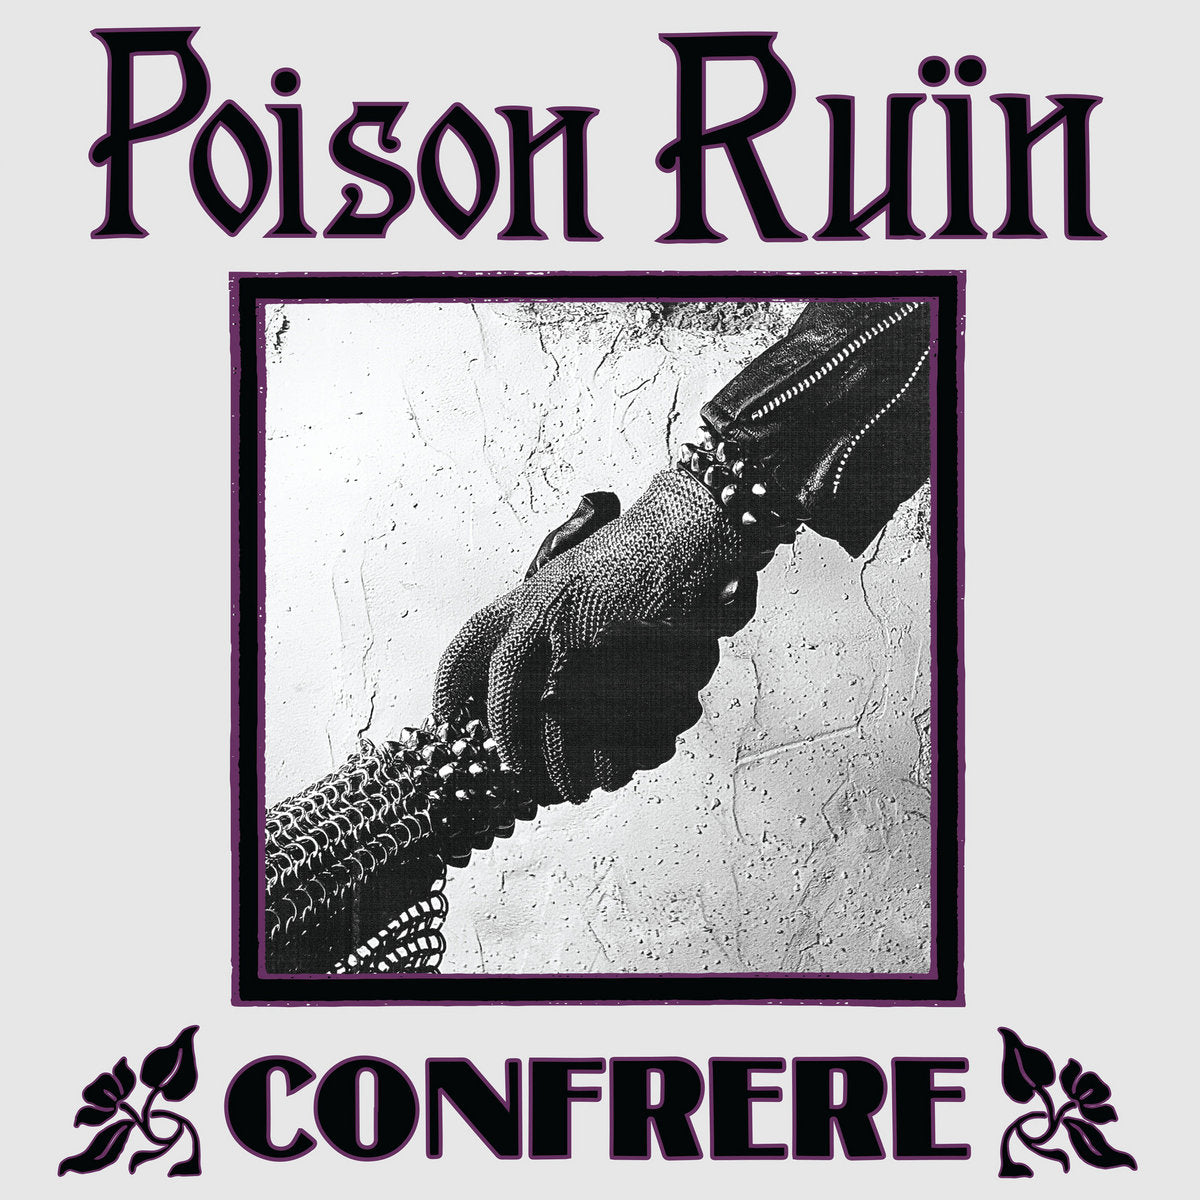 POISON RUIN "Confrere" CD